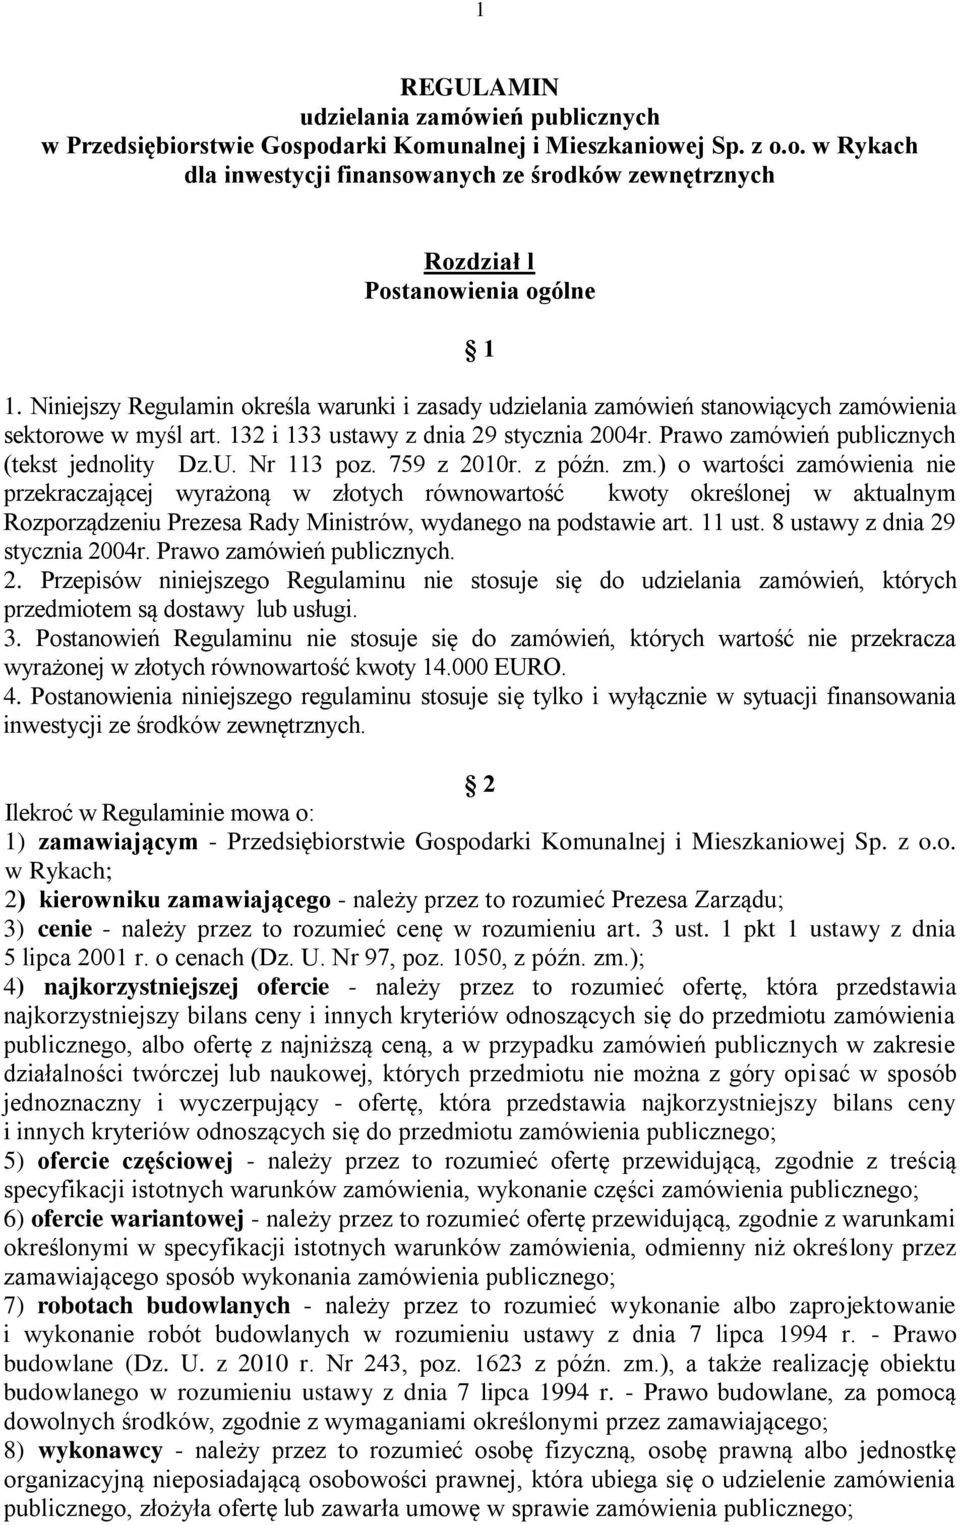 Prawo zamówień publicznych (tekst jednolity Dz.U. Nr 113 poz. 759 z 2010r. z późn. zm.